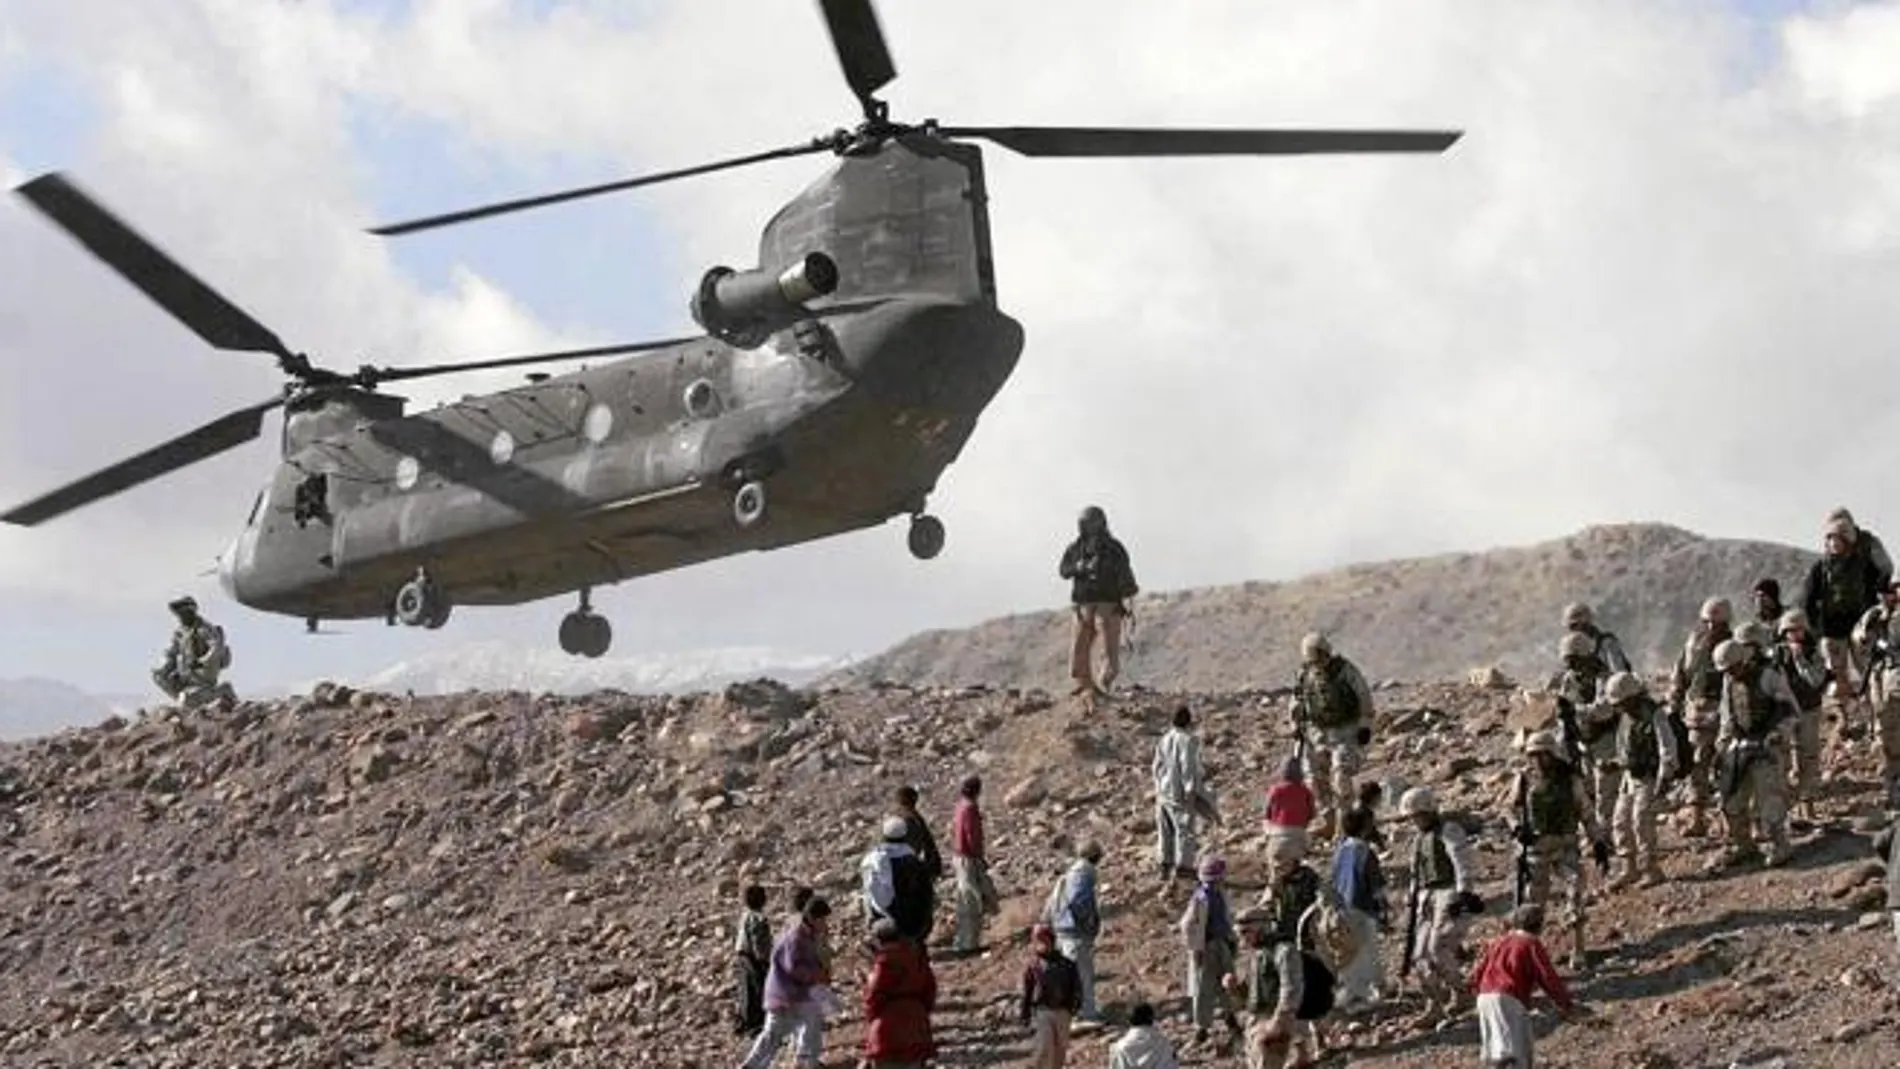 El helicóptero regresaba de una operación contra un bastión insurgente